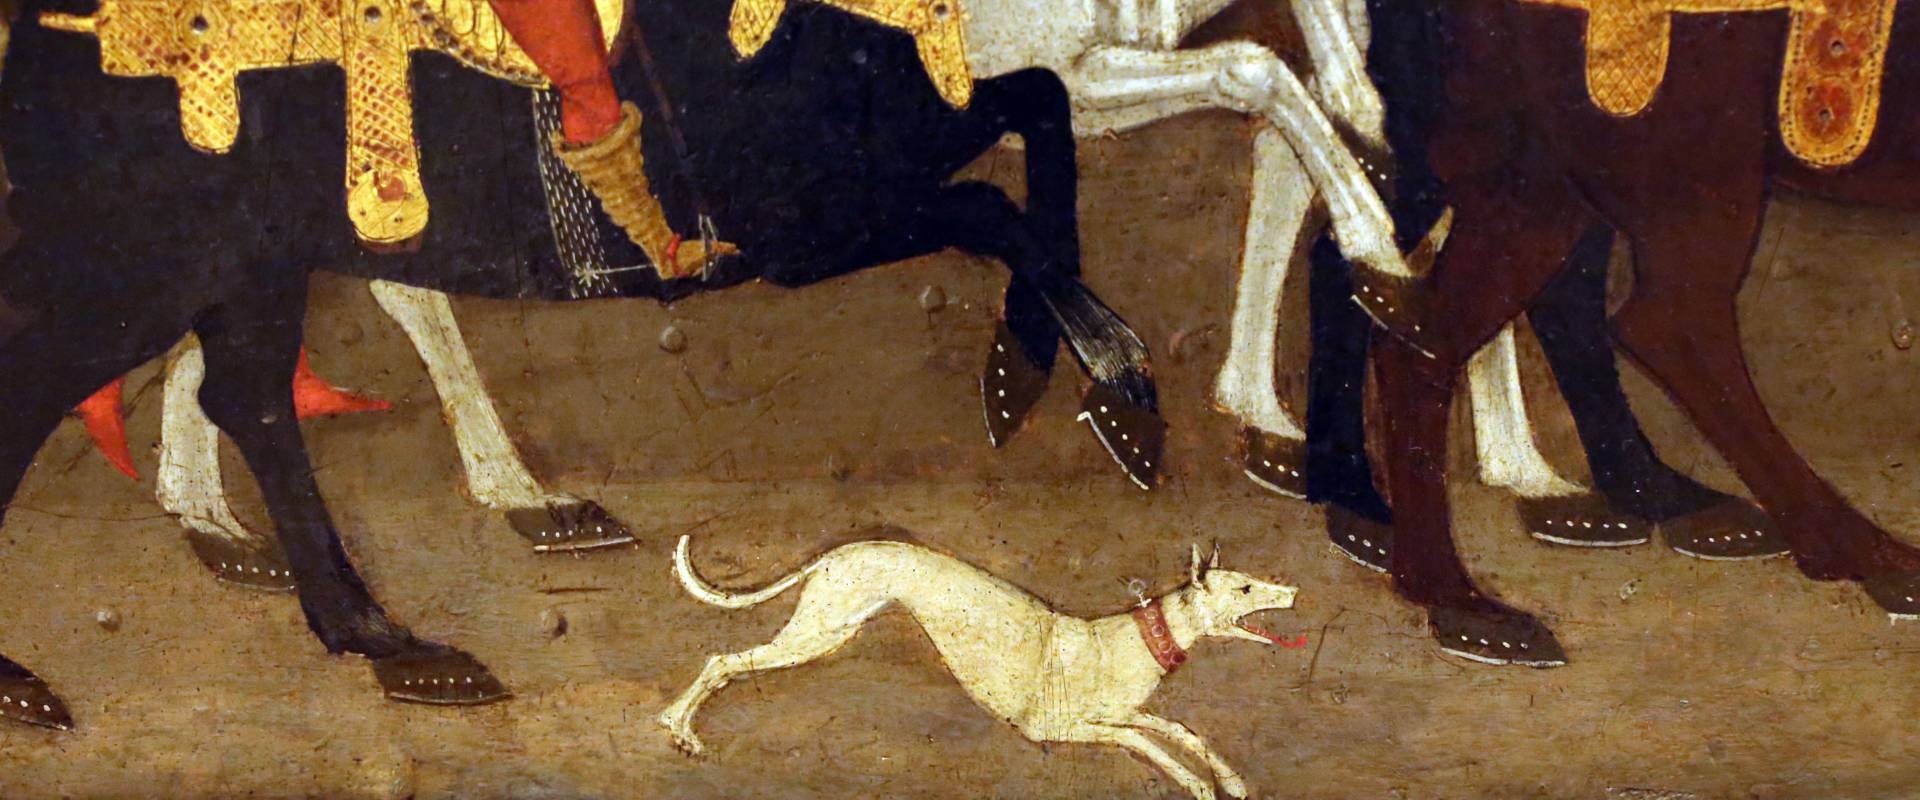 Apollonio di giovanni, novella di griselda, 1440 ca. 04 cane foto di Sailko